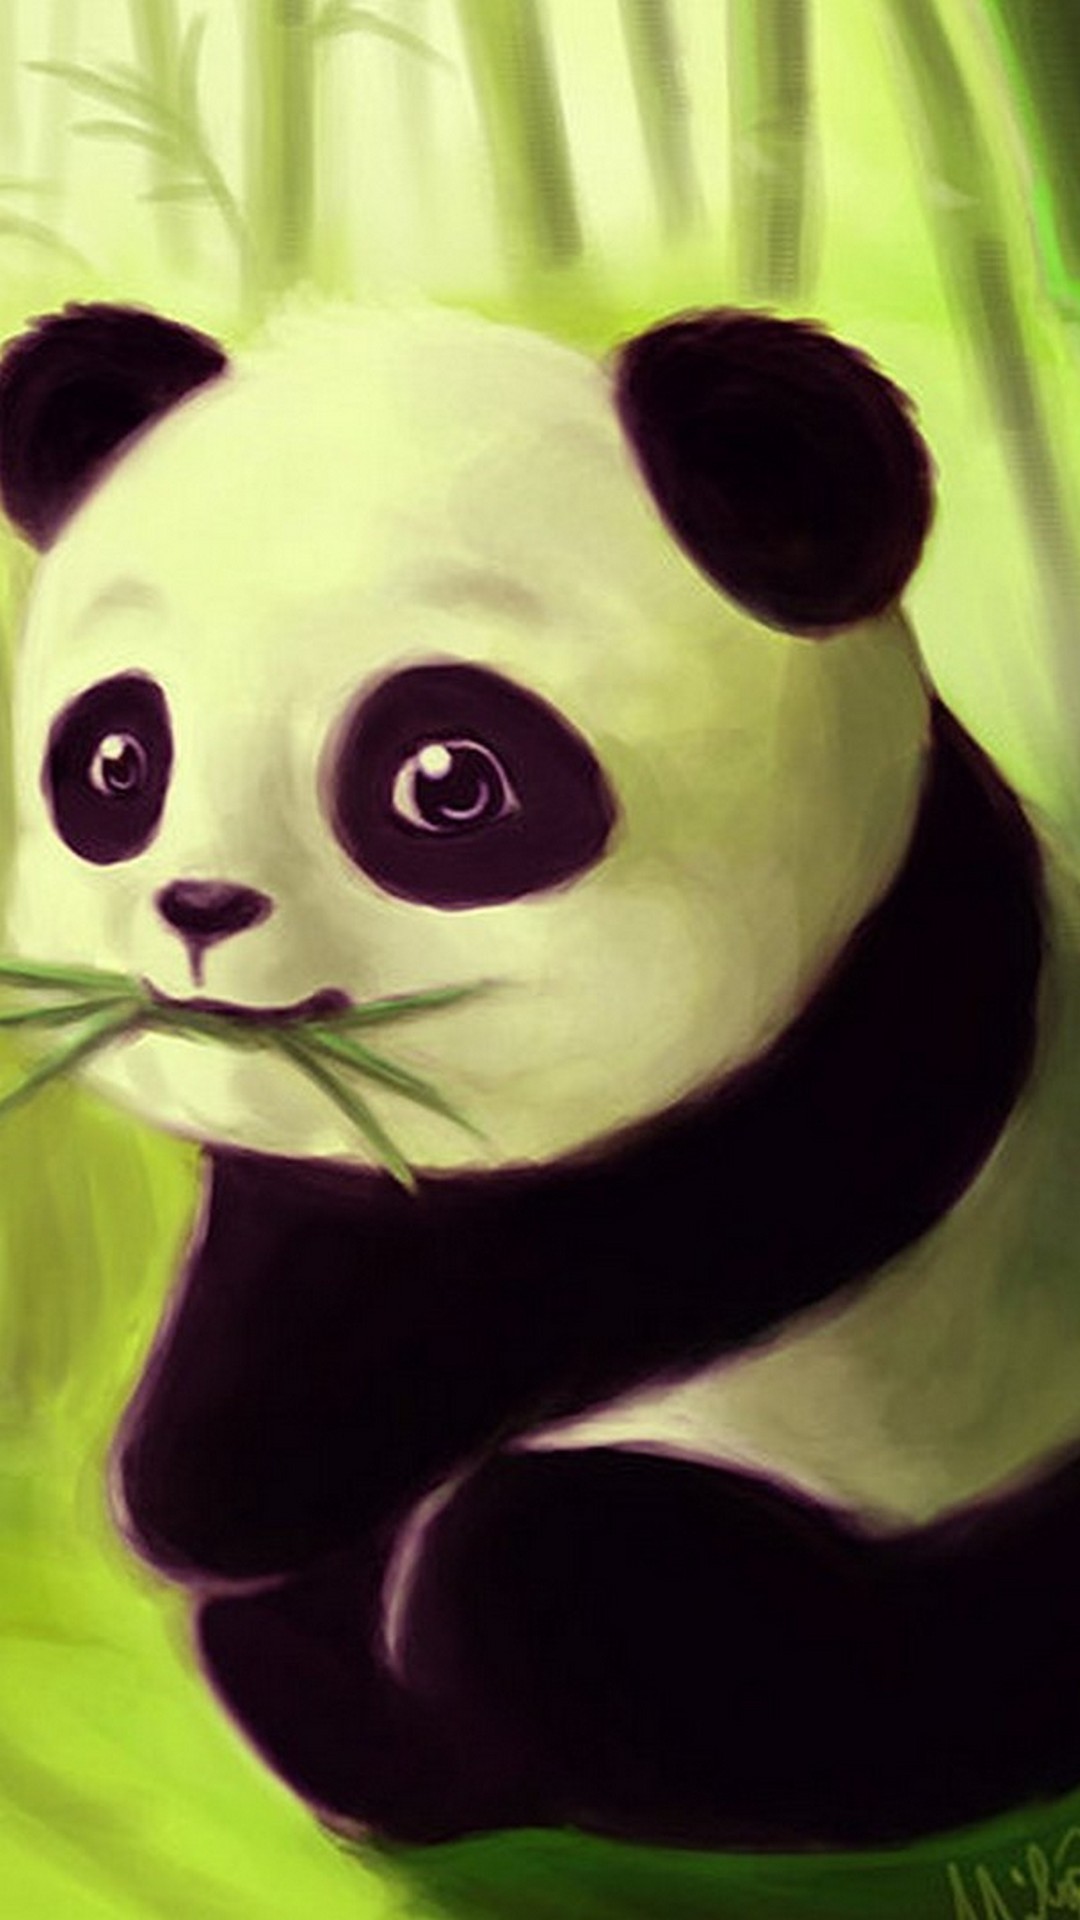 Wallpaper Android Baby Panda